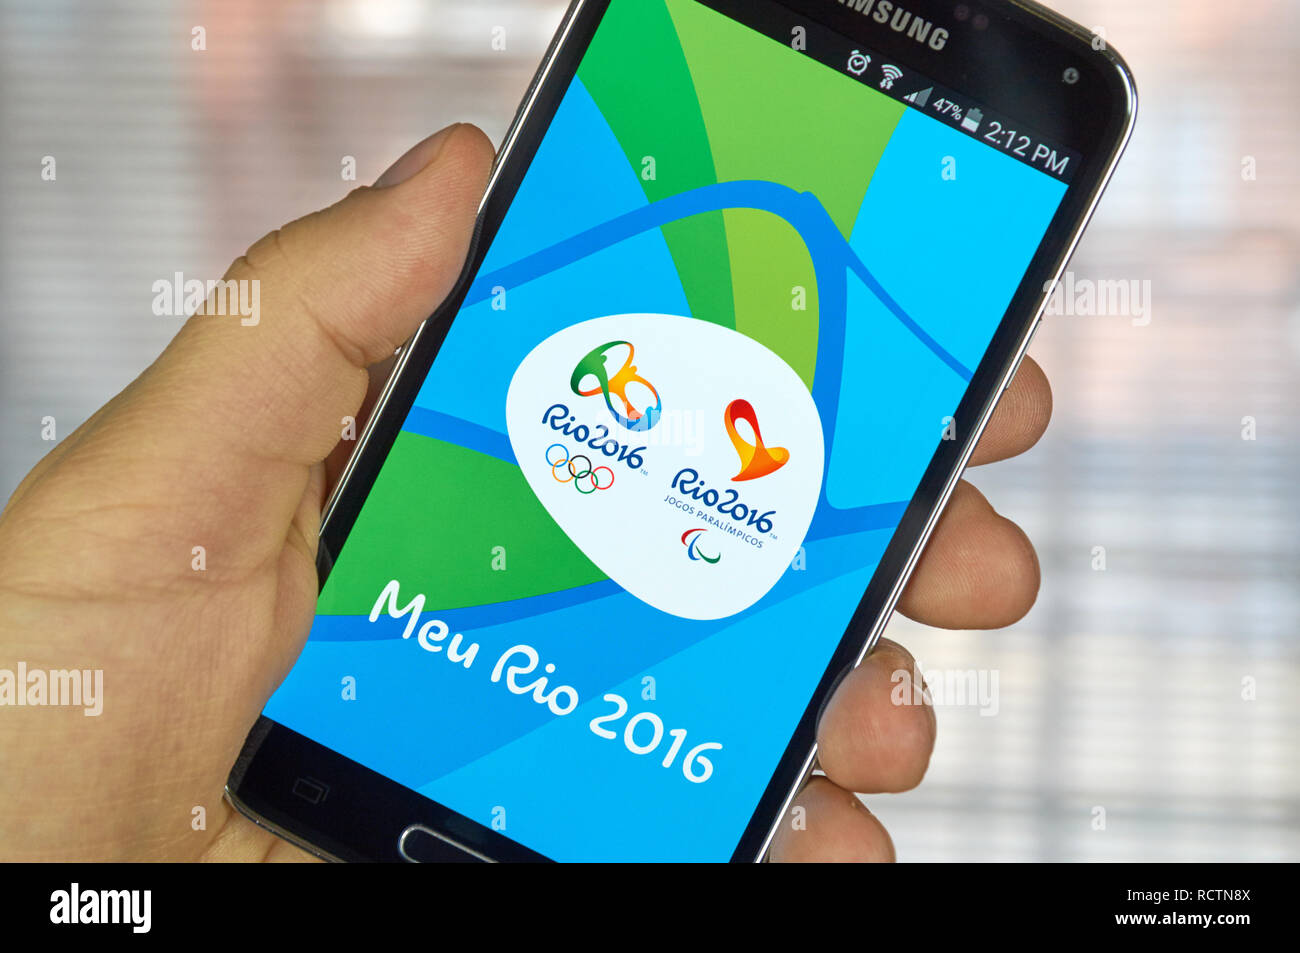 MONTREAL, KANADA - MÄRZ 20, 2016 - Rio 2016 mobile Anwendung auf dem Bildschirm des Samsung S5. Die Stadt von Rio de Janeiro ist Gastgeber des G gewählt worden Stockfoto